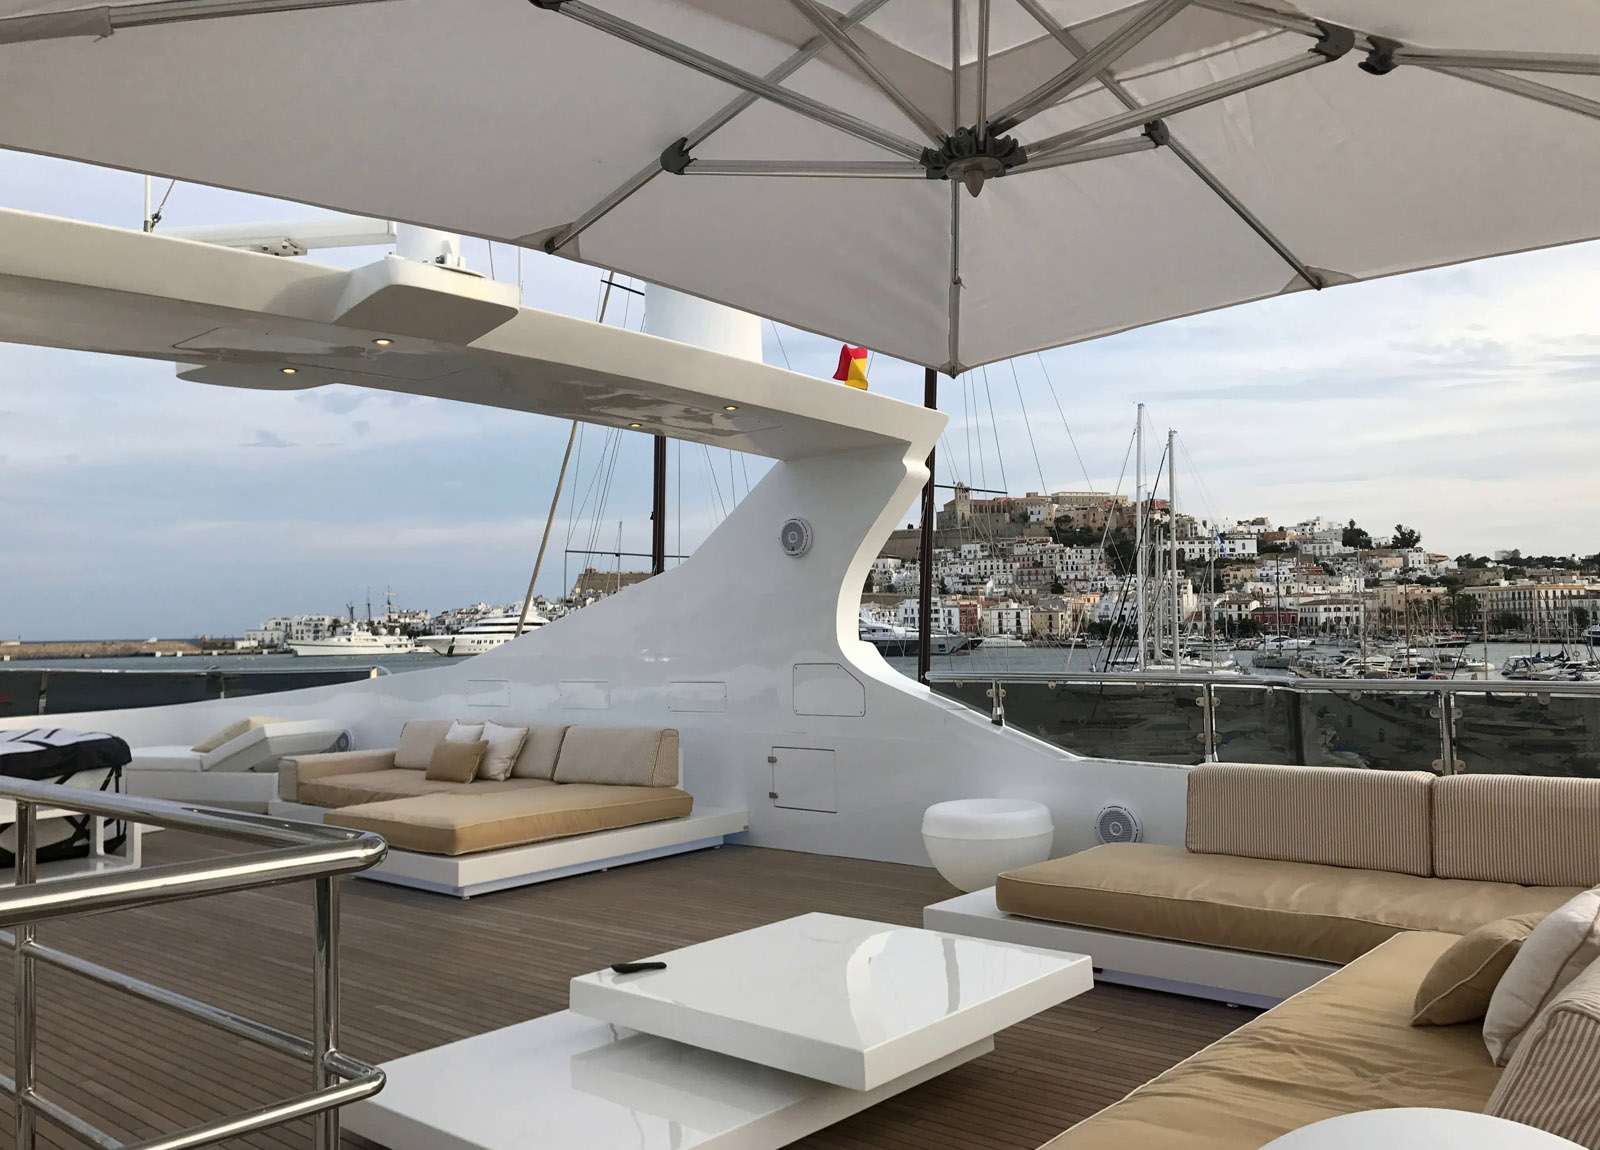 upperdeck-seating-luxury-yacht-villa-sul-mare-44m-western-mediterranean